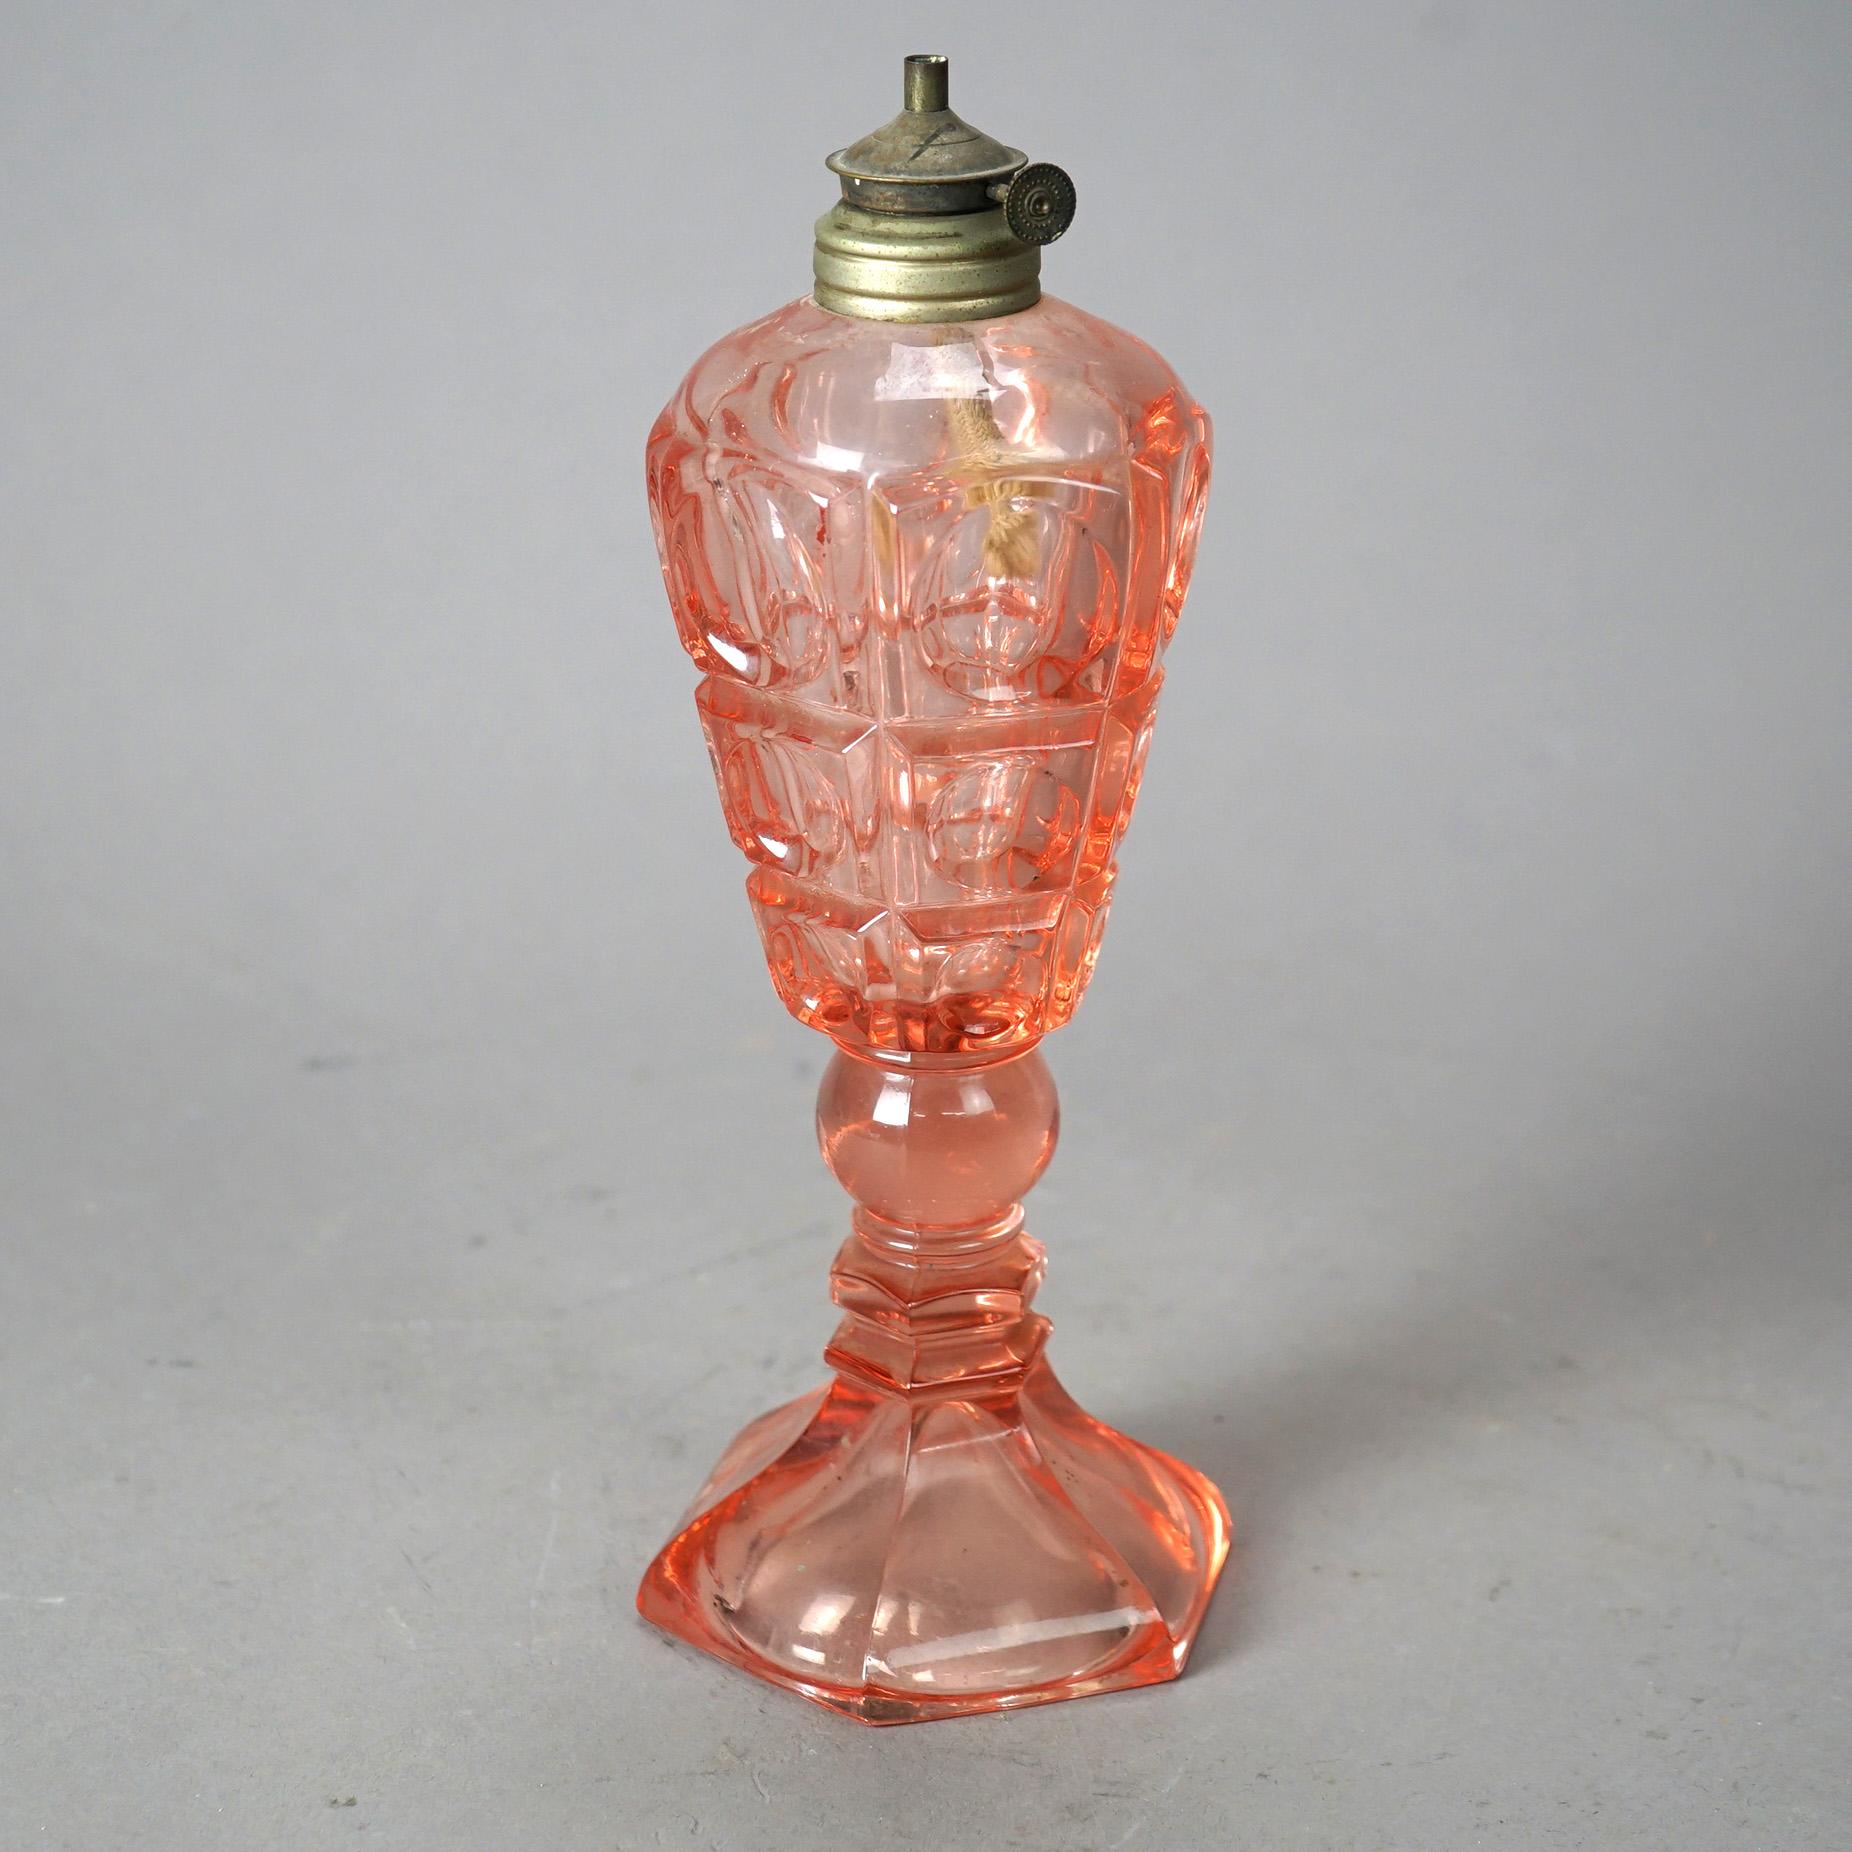 Antike Öllampe aus rosafarbenem Pressglas mit getäfeltem Coinspot-Muster auf einer Säule mit sechseckigem Fuß, um 1840

Maße - 10 